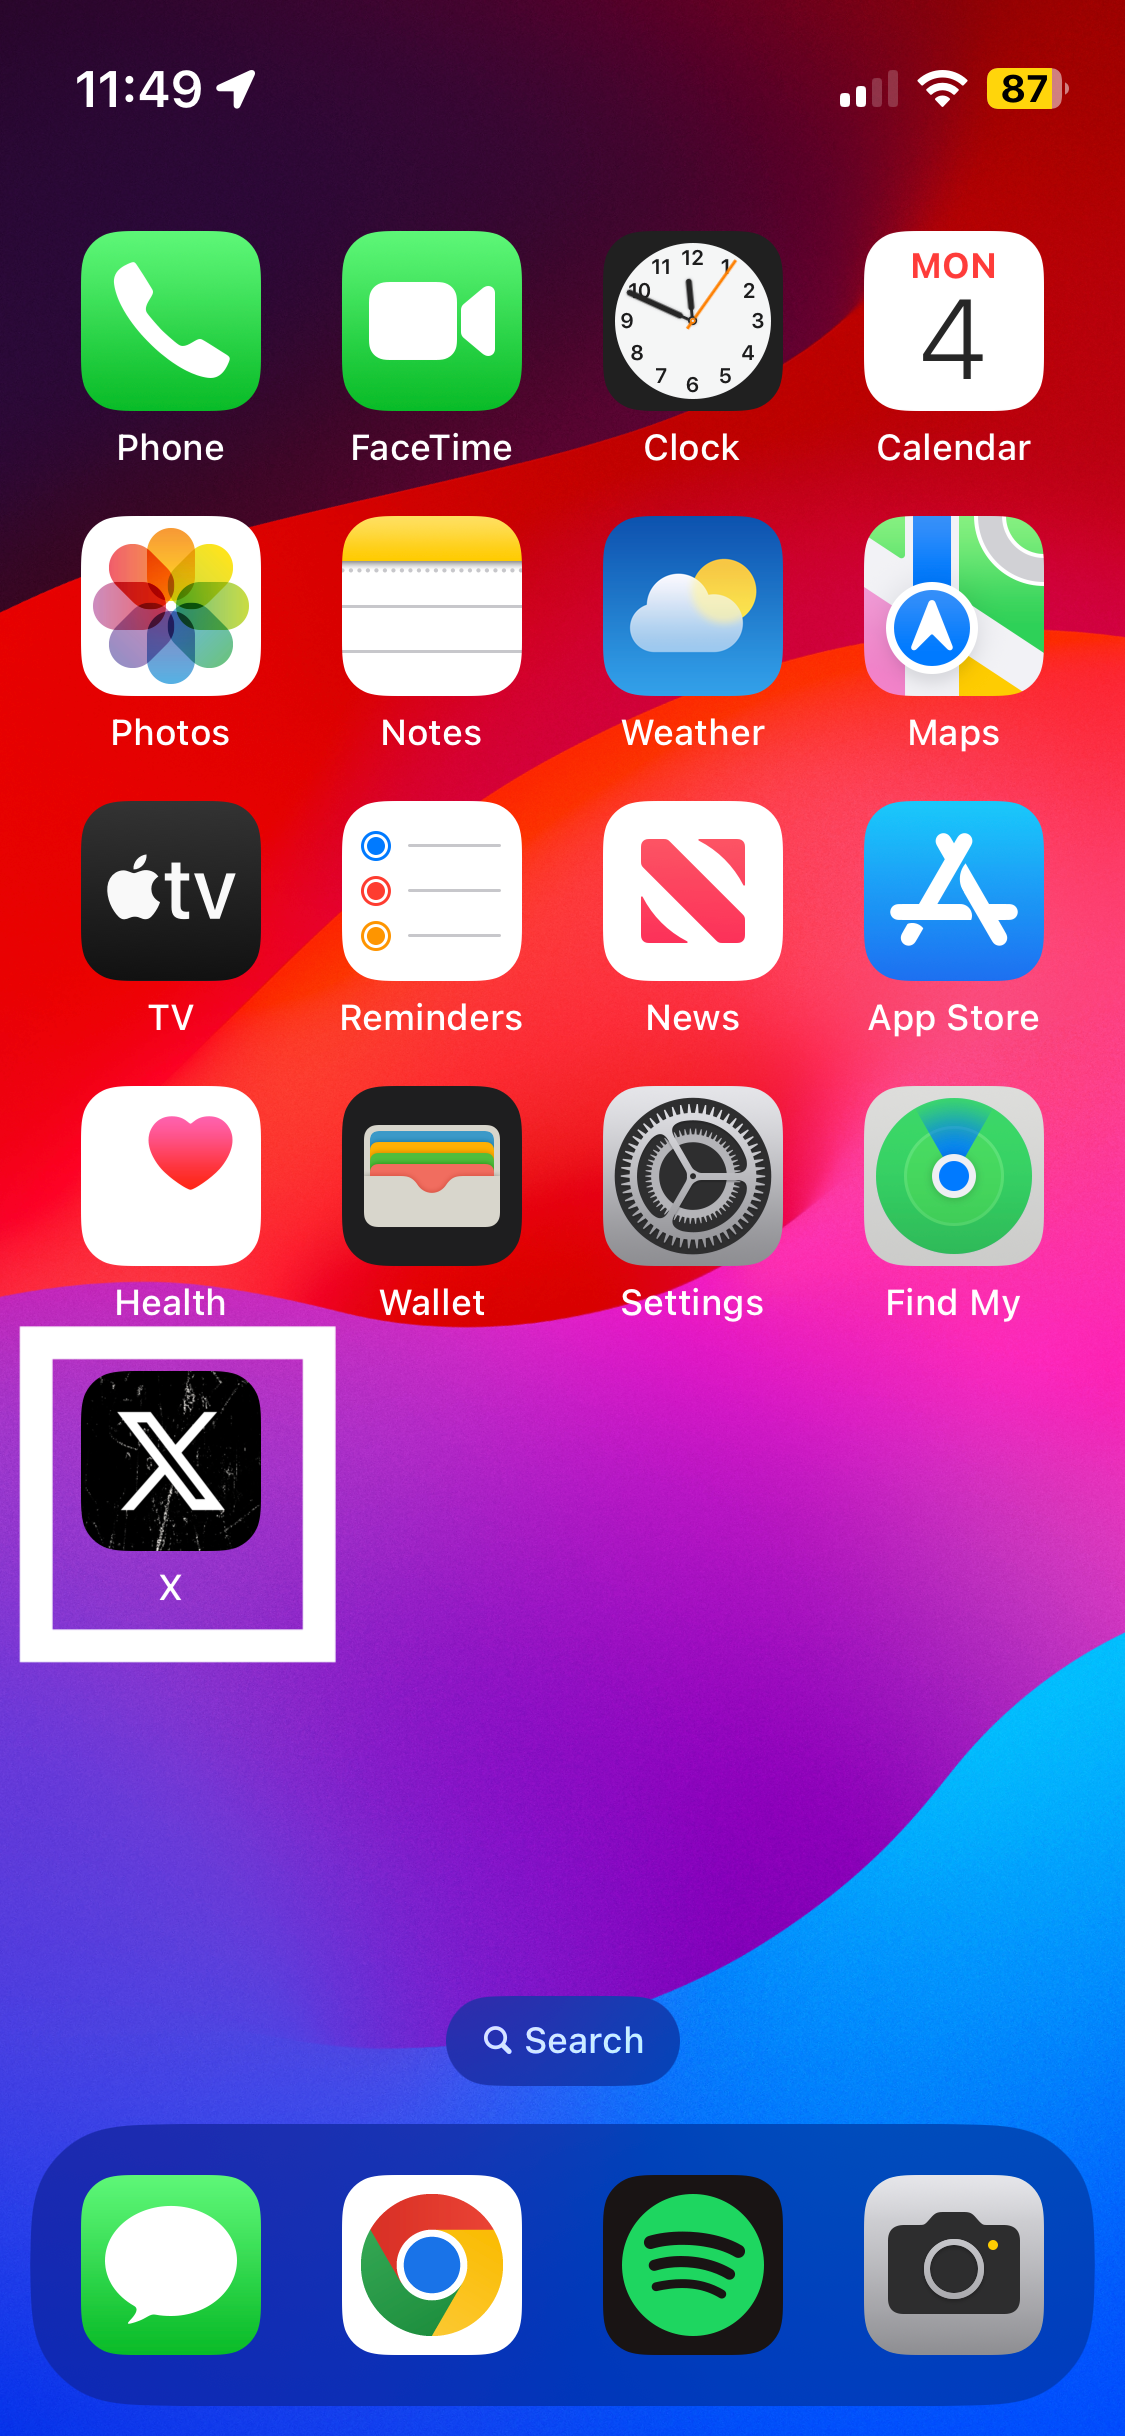 Ekran główny iPhone'a z podświetloną aplikacją X